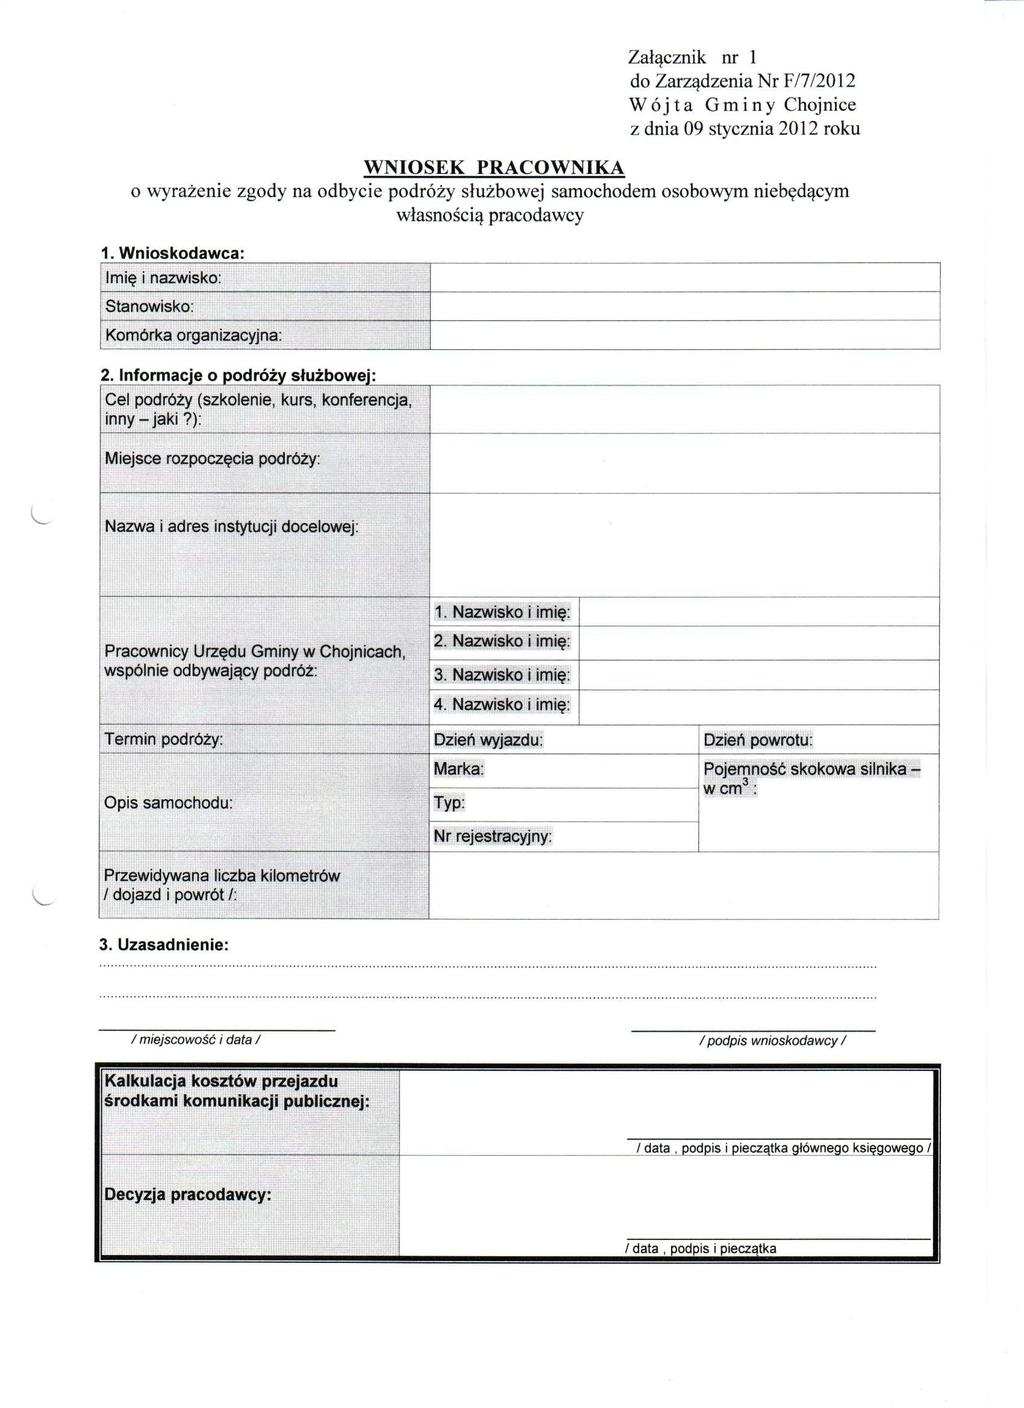 Załącznik nr 1 do Zarządzenia Nr F/7/2012 WNIOSEK PRACOWNIKA o wyrażenie zgody na odbycie podróży służbowej samochodem osobowym niebędącym własnością pracodawcy 1.